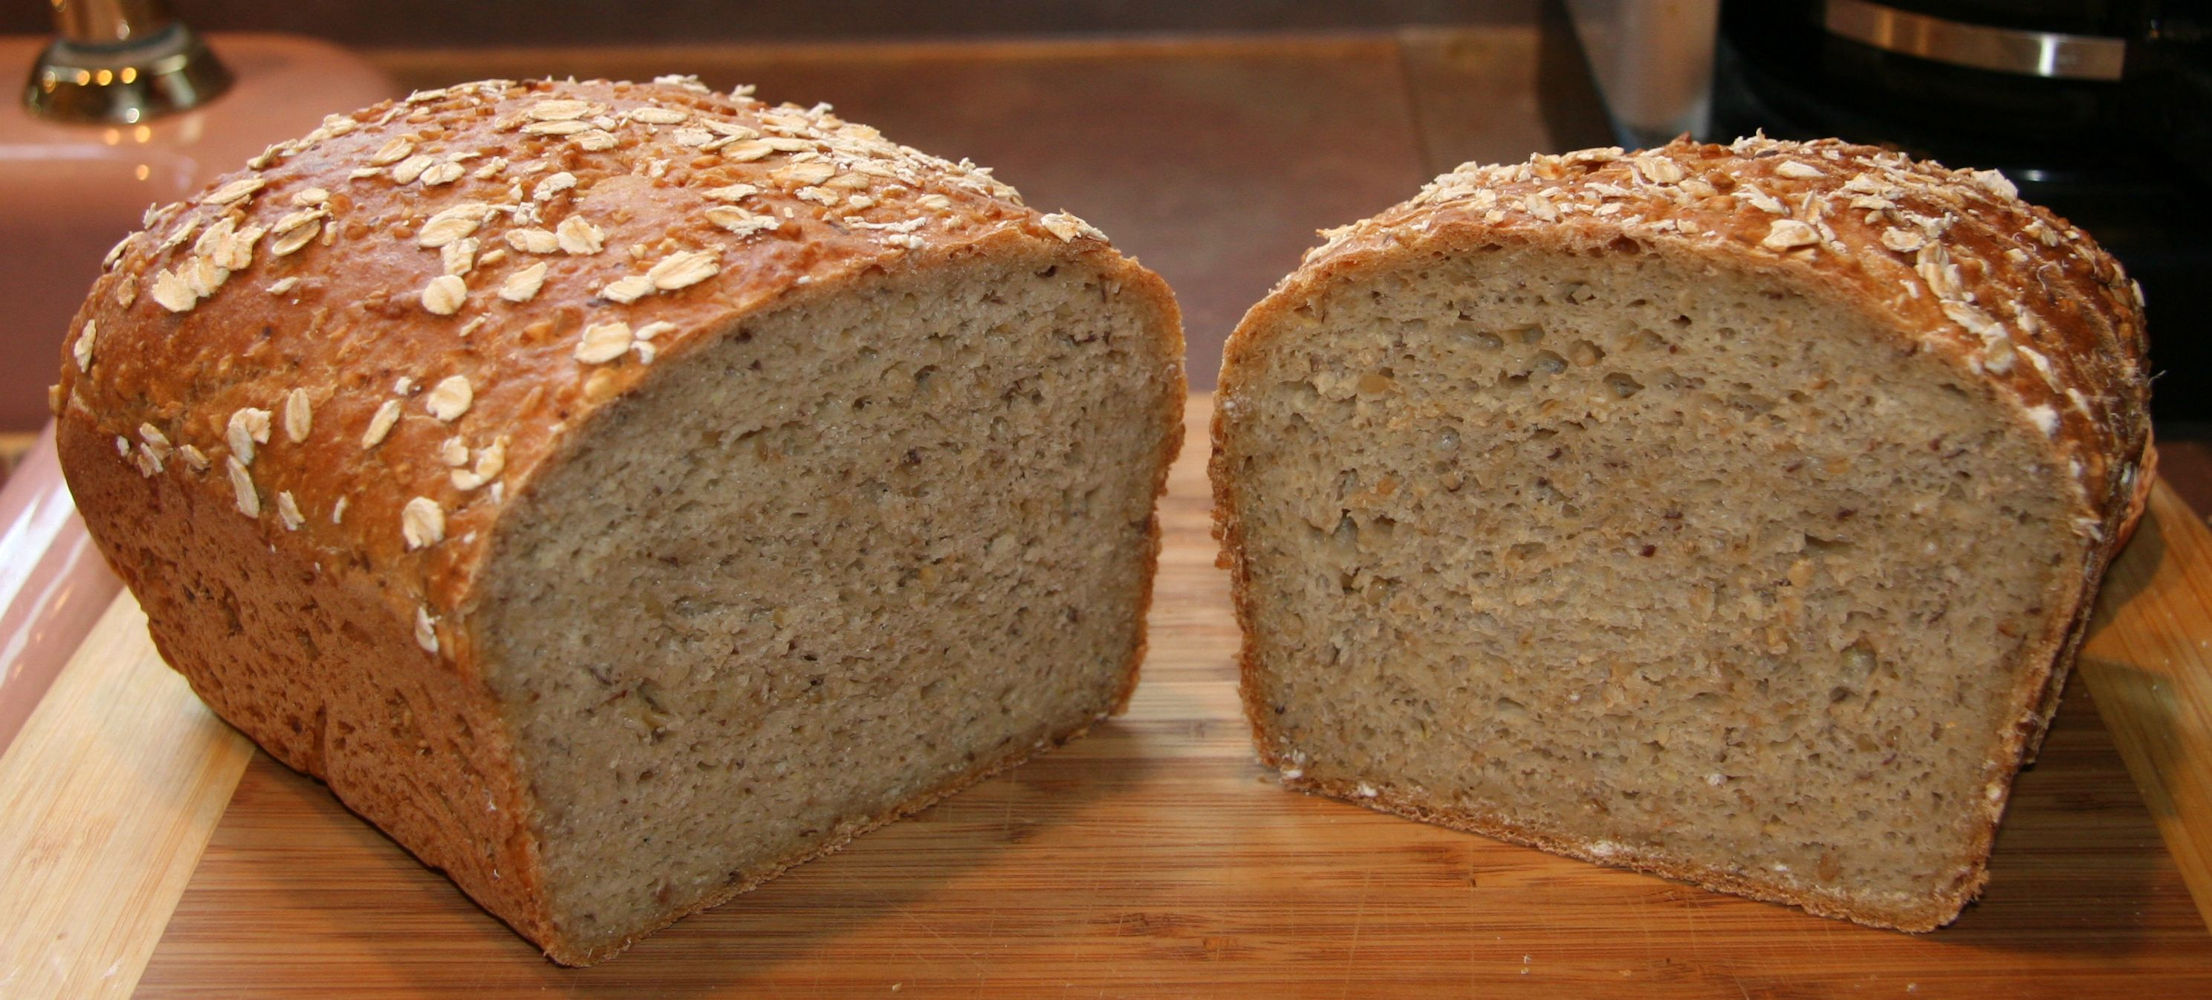 Whole Wheat and Steel-Cut Oats Bread - A Long-Fermentation Bread